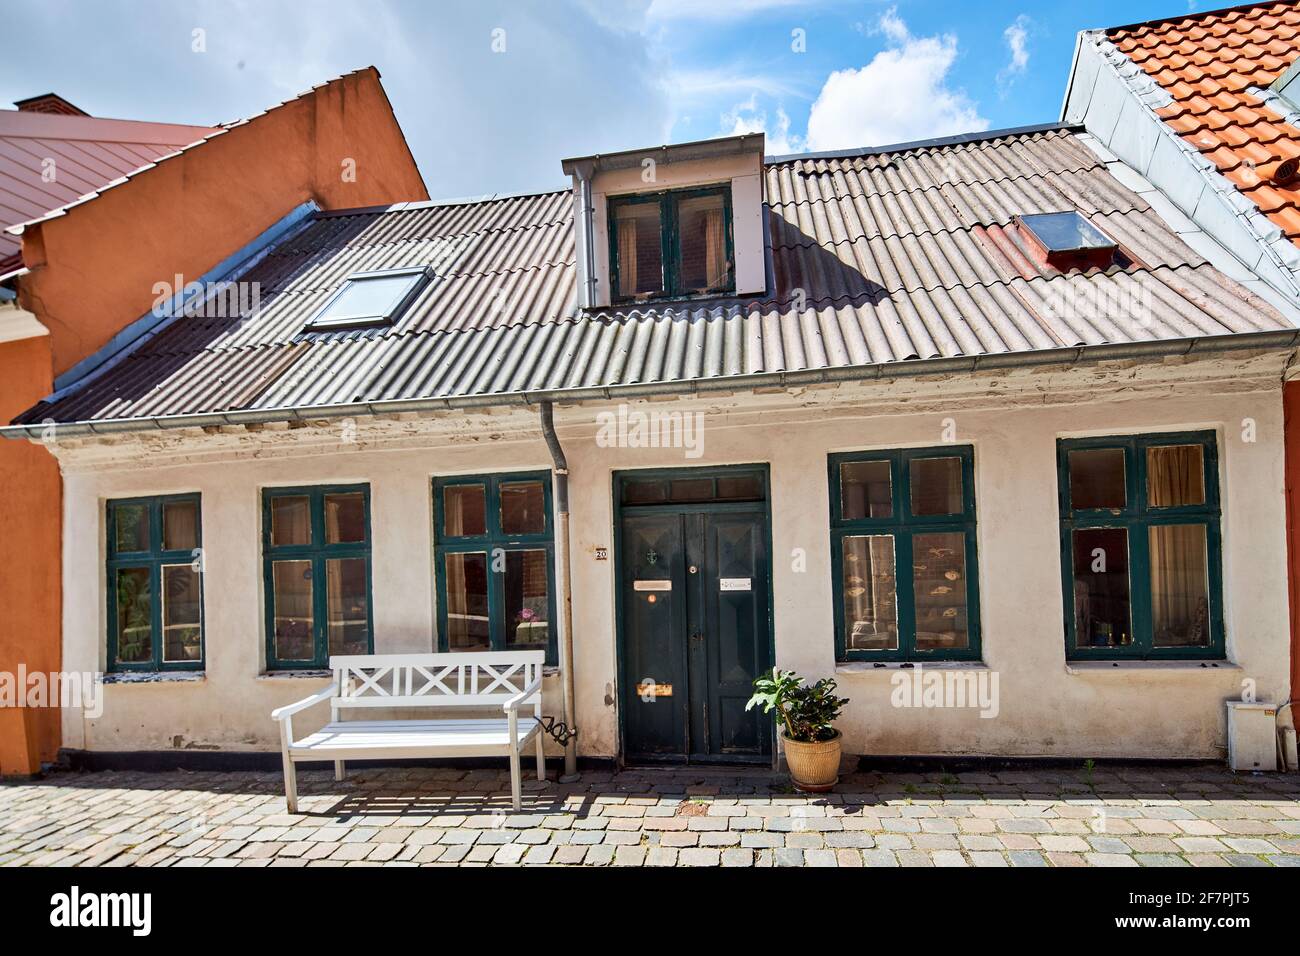 a tiny home in narrow street in denmark Stock Photo